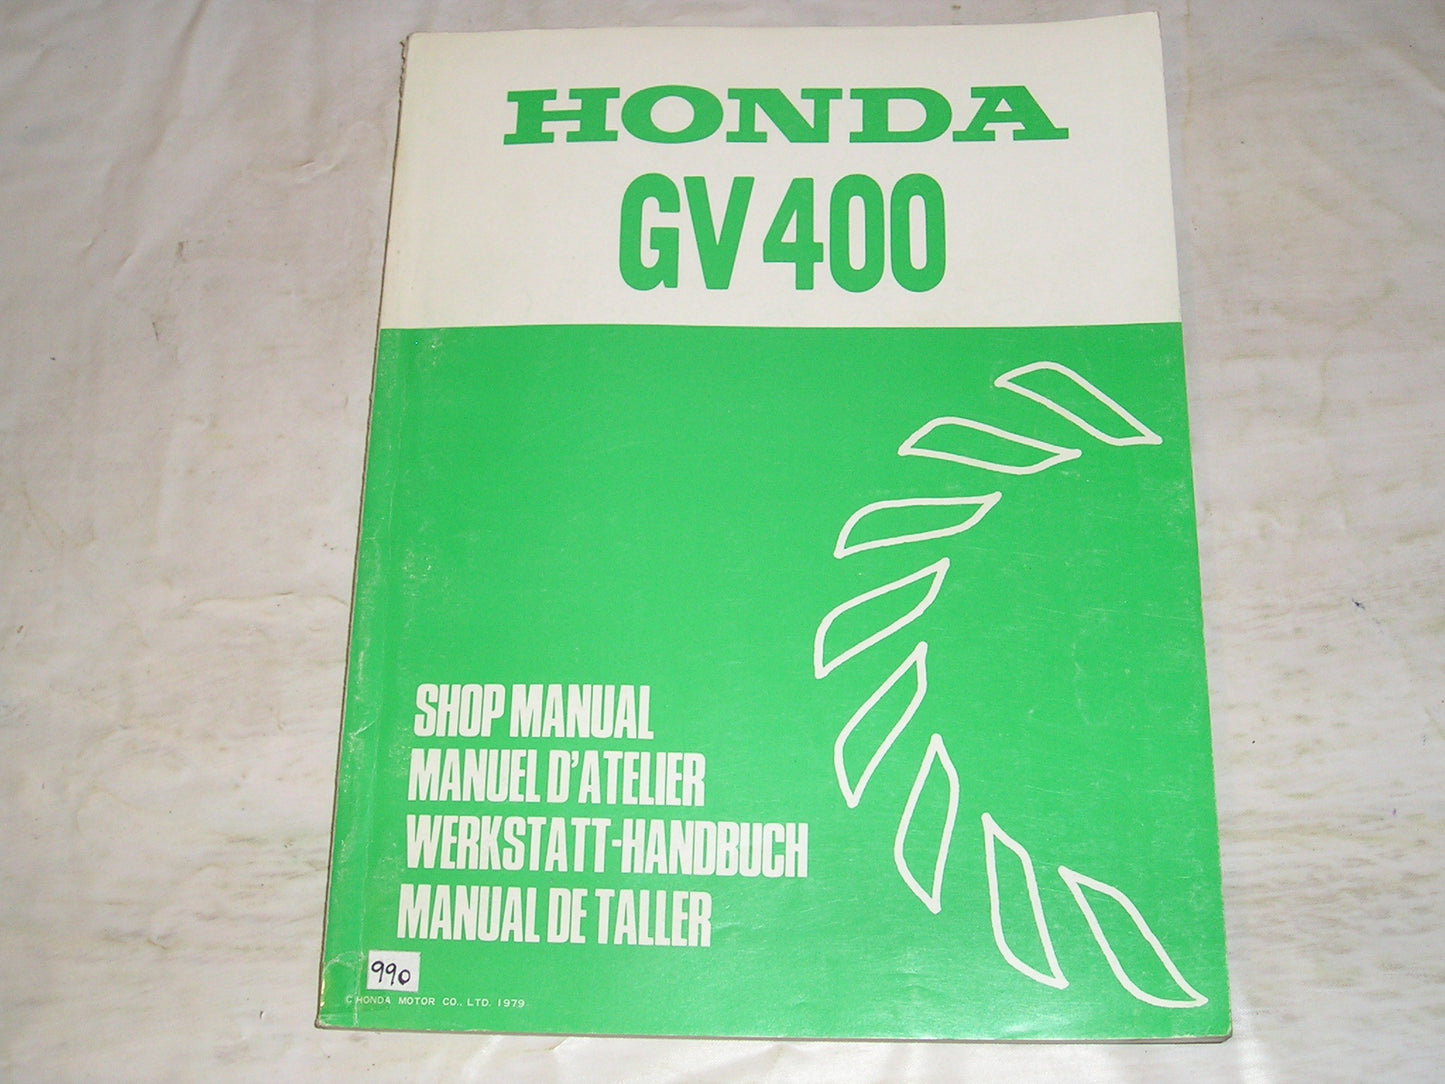 HONDA GV400 1979-1983  General Purpose Engine  Service Manual  6689101  #990